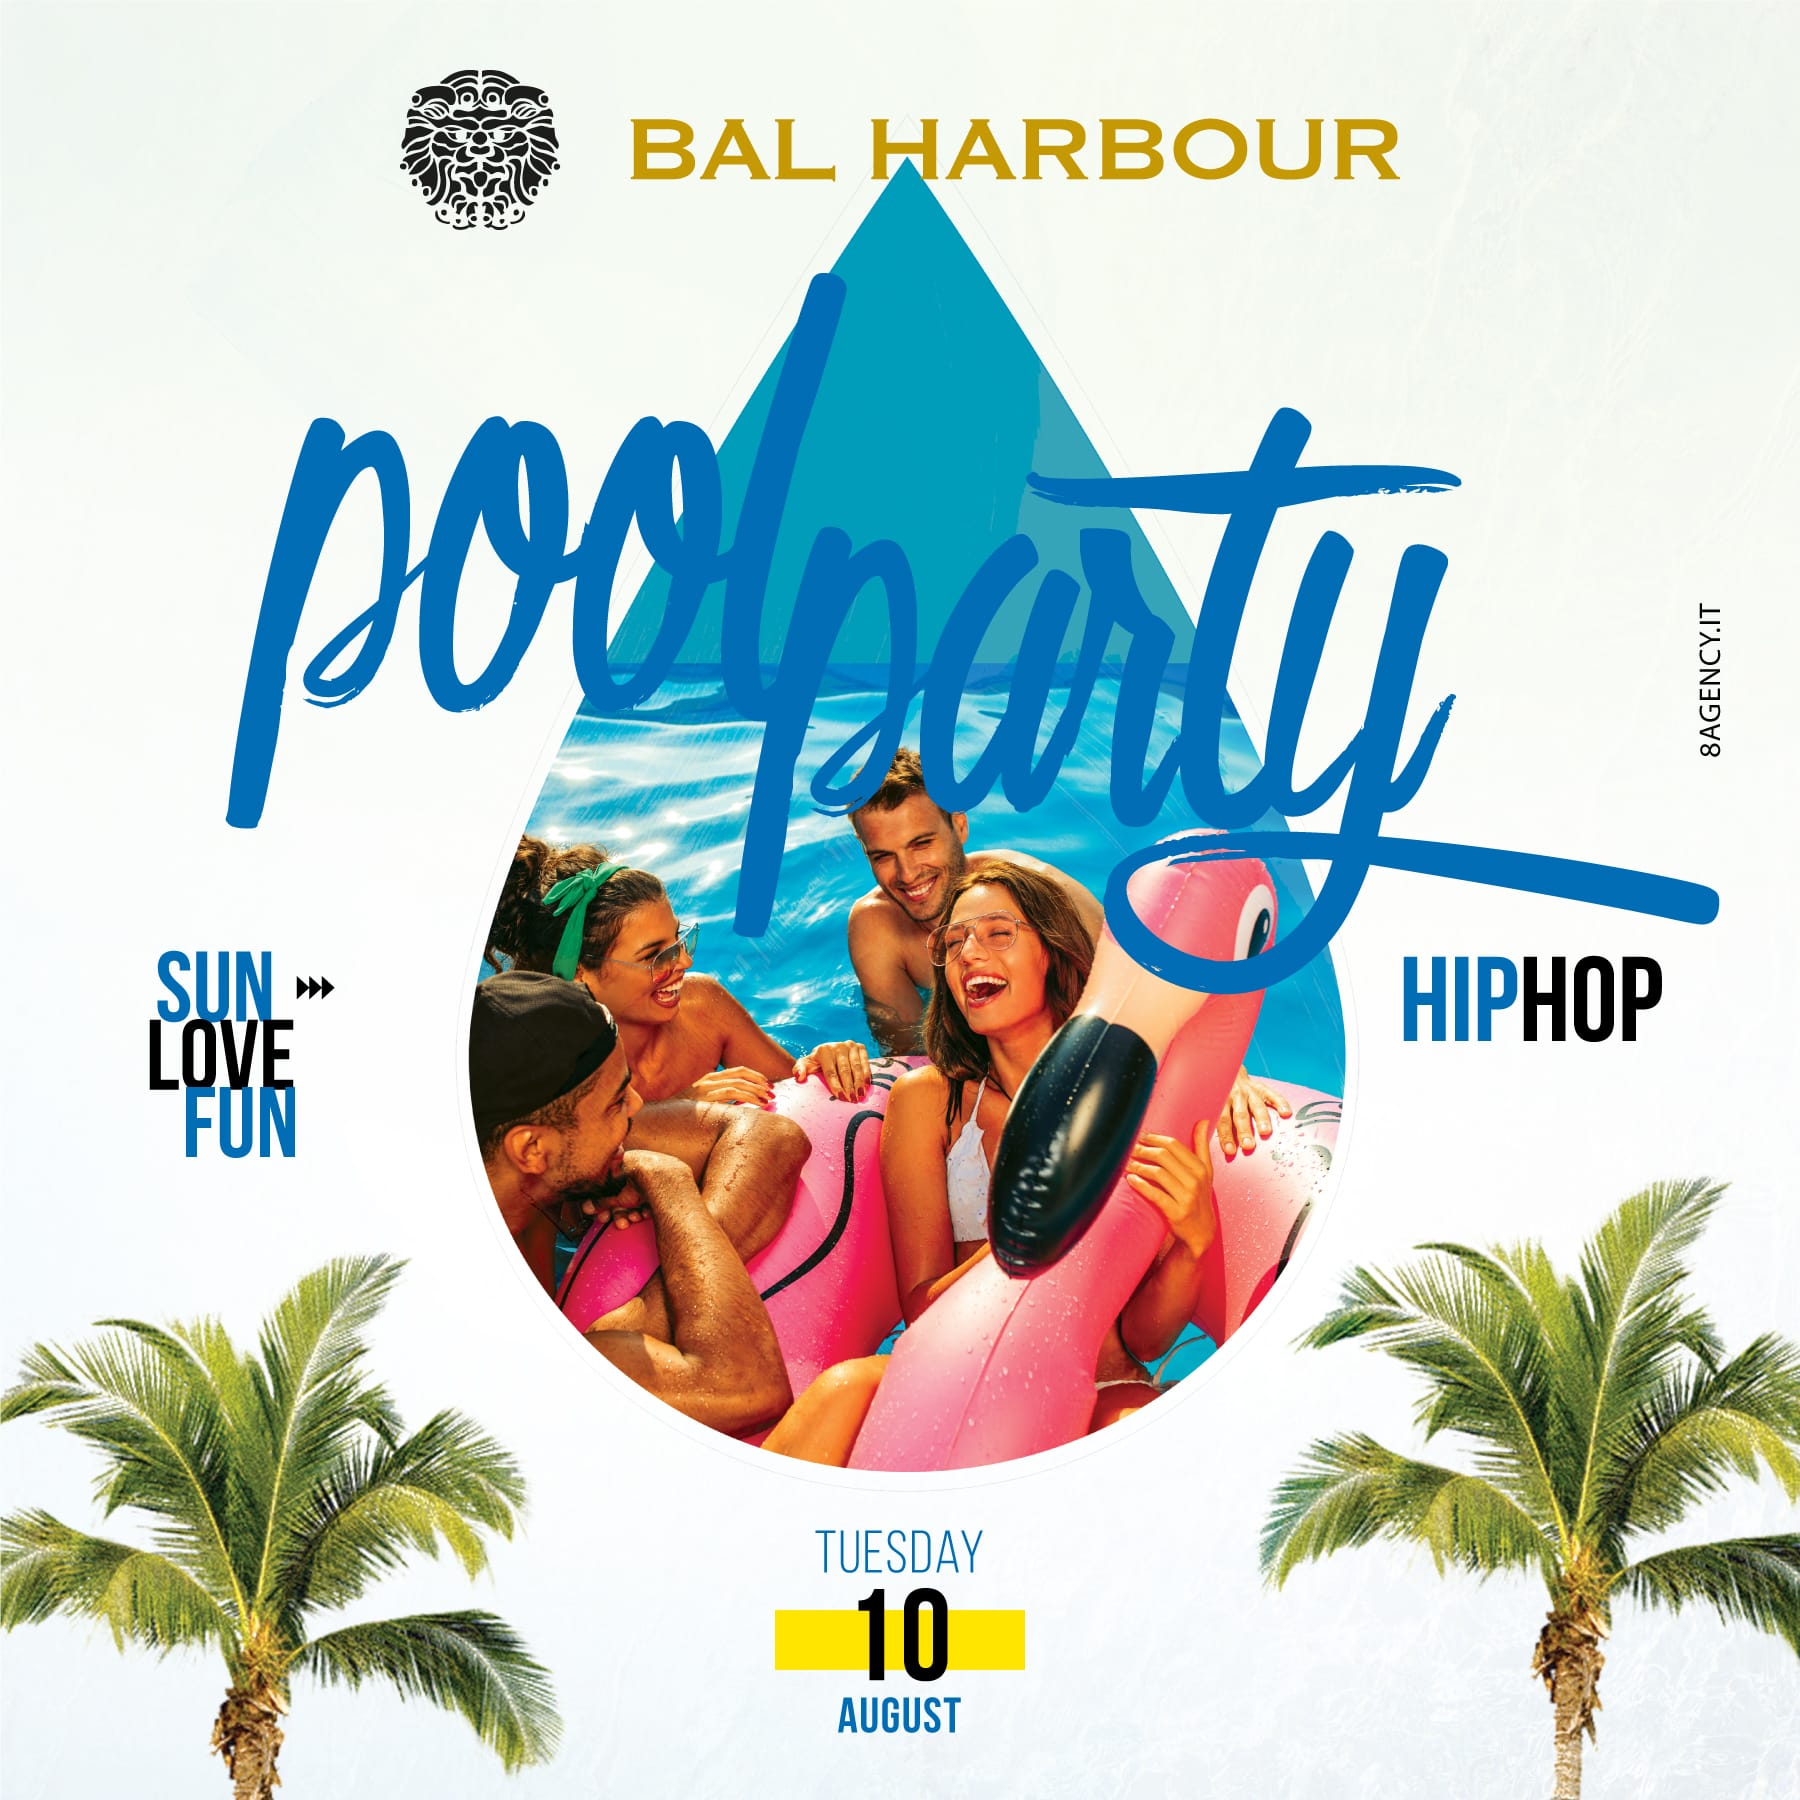 Pool Party Martedì 10 agosto Bal Harbour. Feste in Piscina San Teodoro.